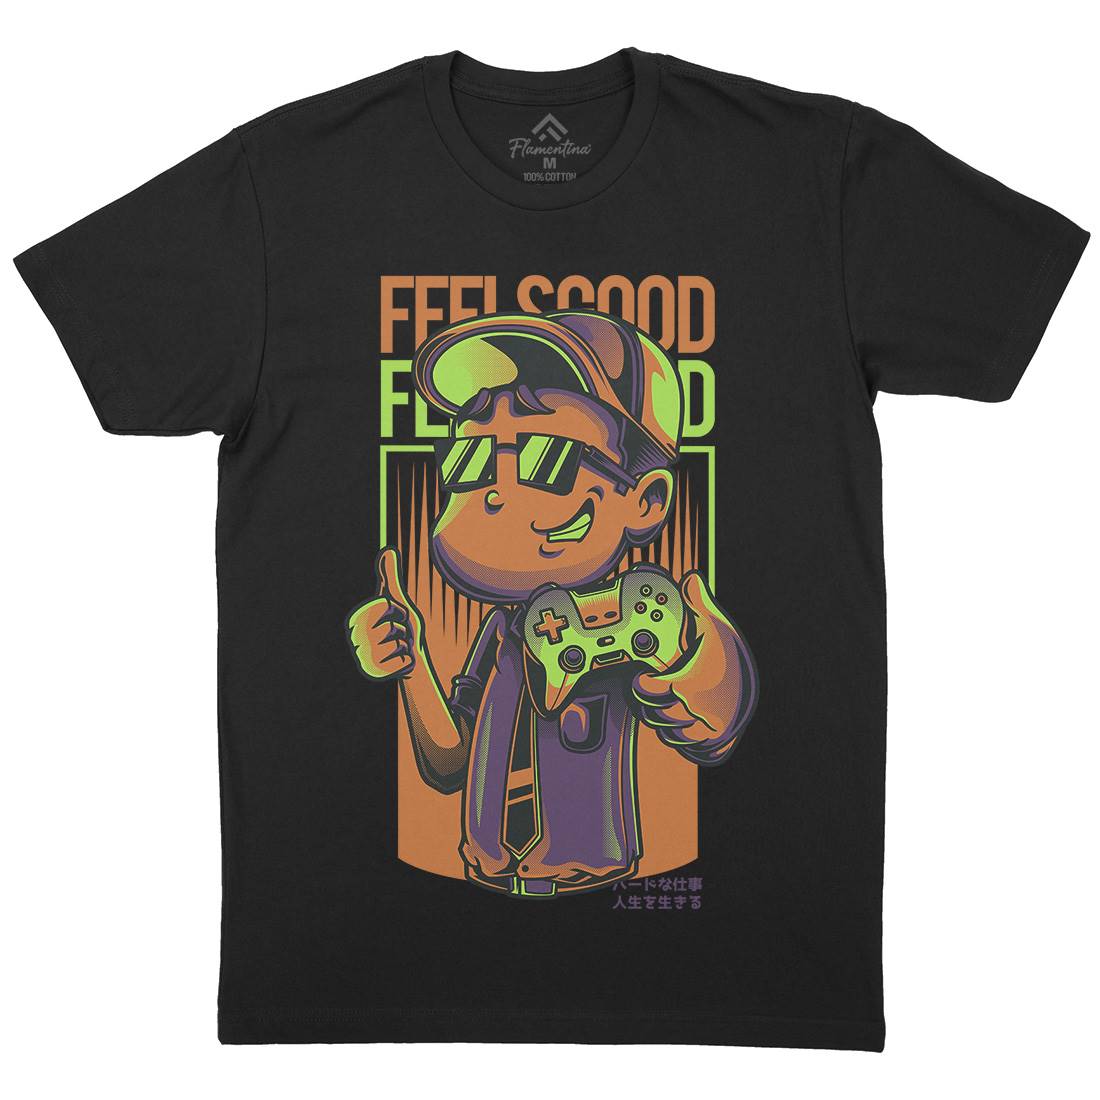 Feels Good Mens Organic Crew Neck T-Shirt Geek D773